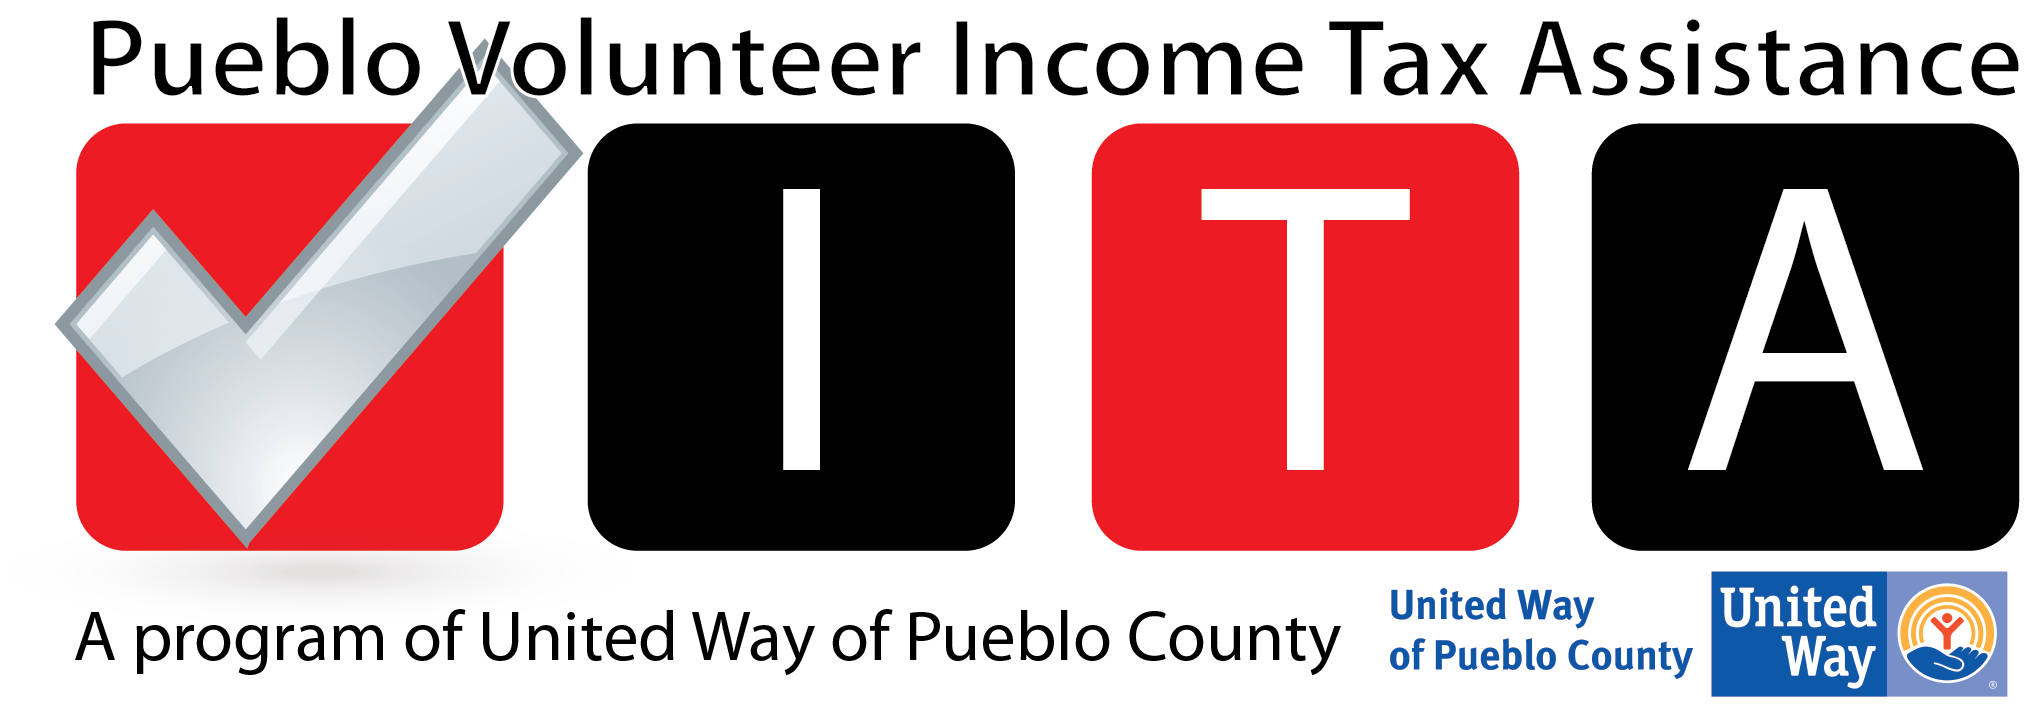 Pueblo Volunteer Income Tax Assistance Program